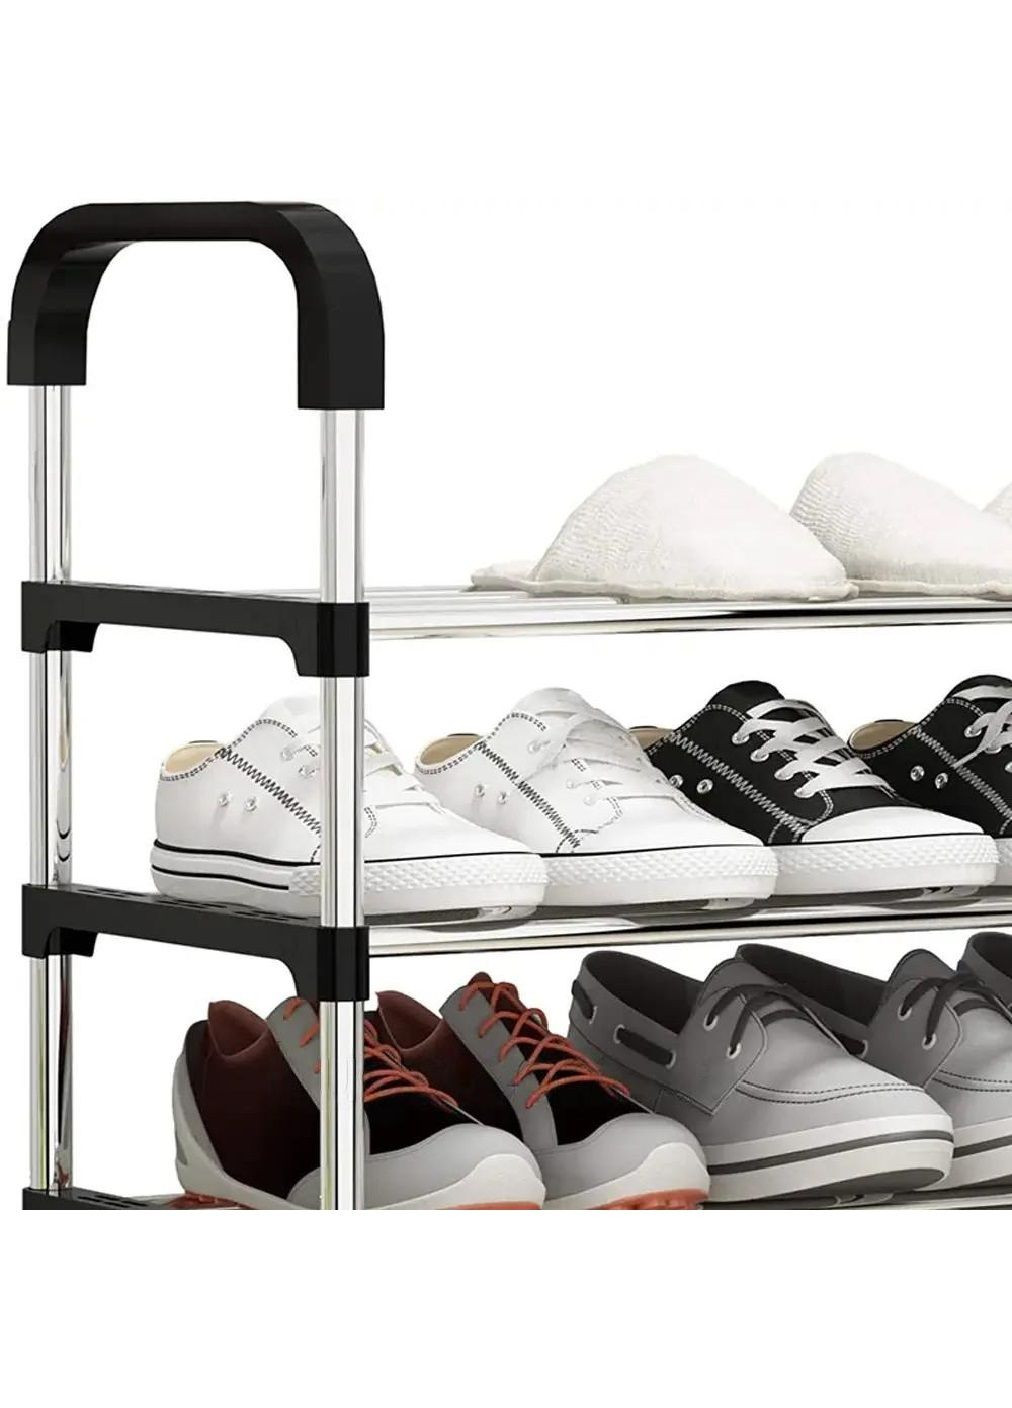 Тумба полка подставка органайзер стойка для обуви на 6 ярусов с щеткой для чистки обуви 123х57х29 см (476704-Prob) Unbranded (289059703)